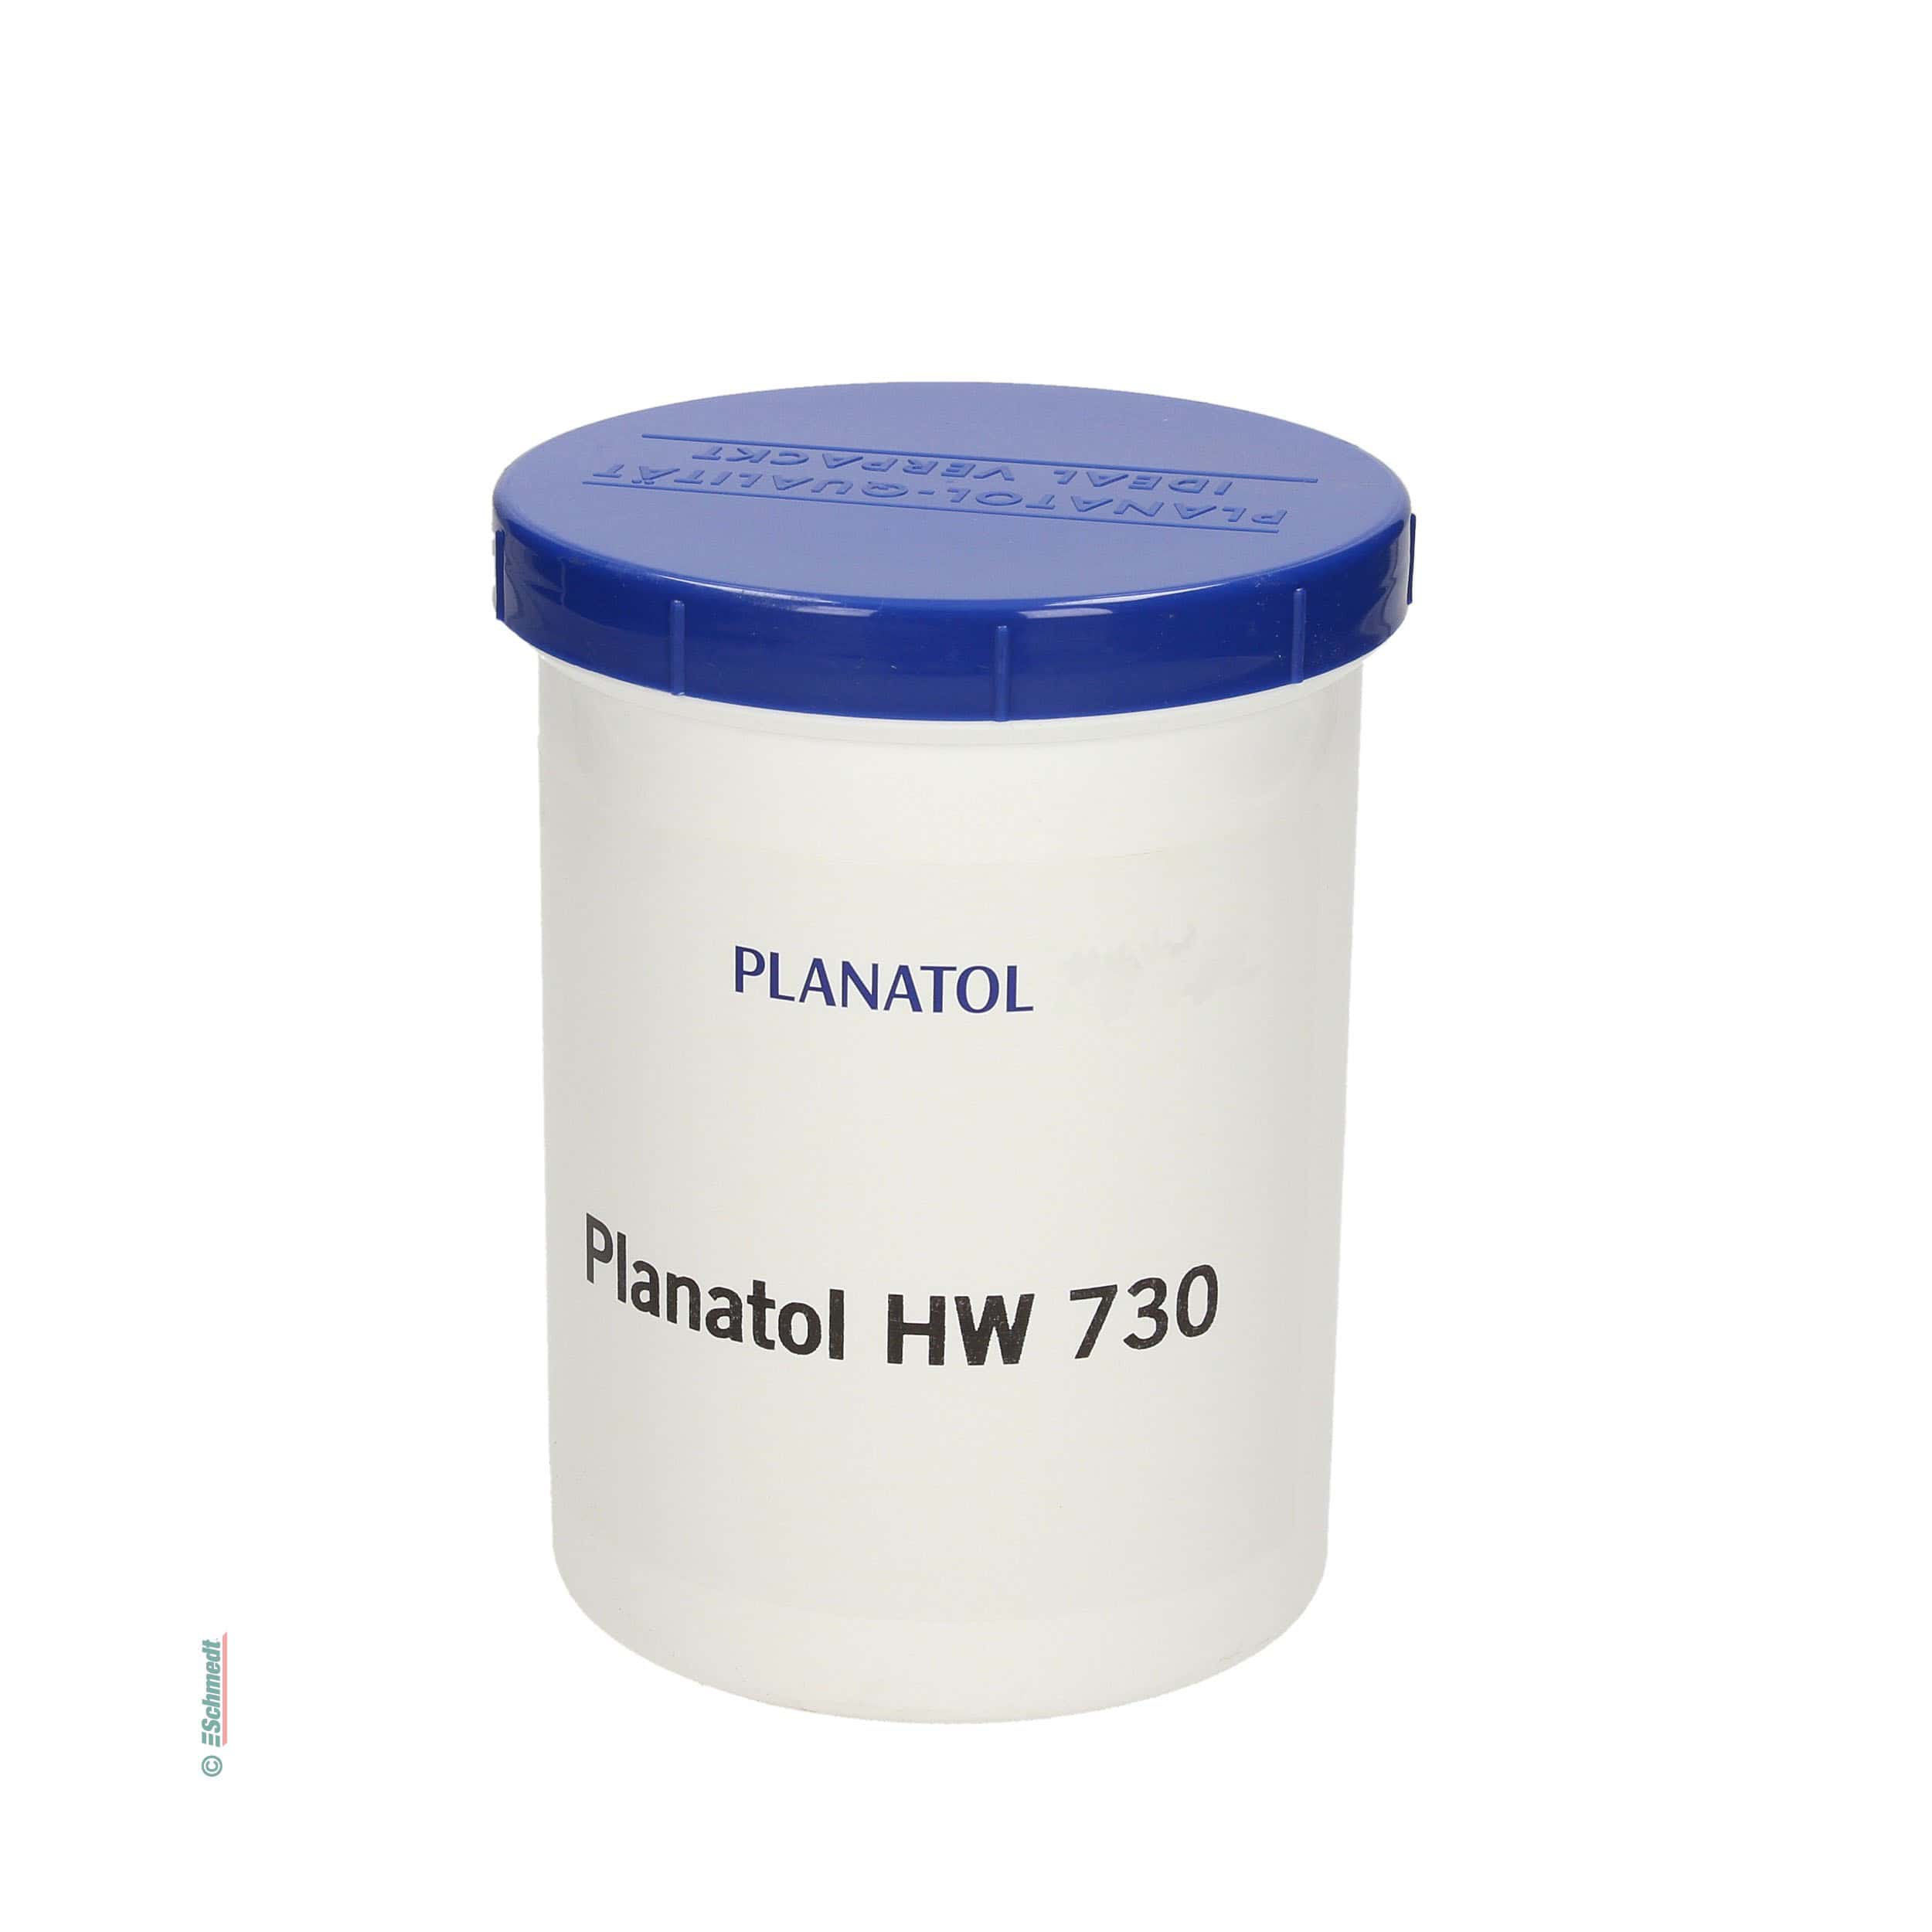 Planatol HW 730 - Contenu Pot / 1,05 Kg - Collage de papiers et d'autres matériaux absorbants avec plastique et revêtements de PE, PP etc.  ...